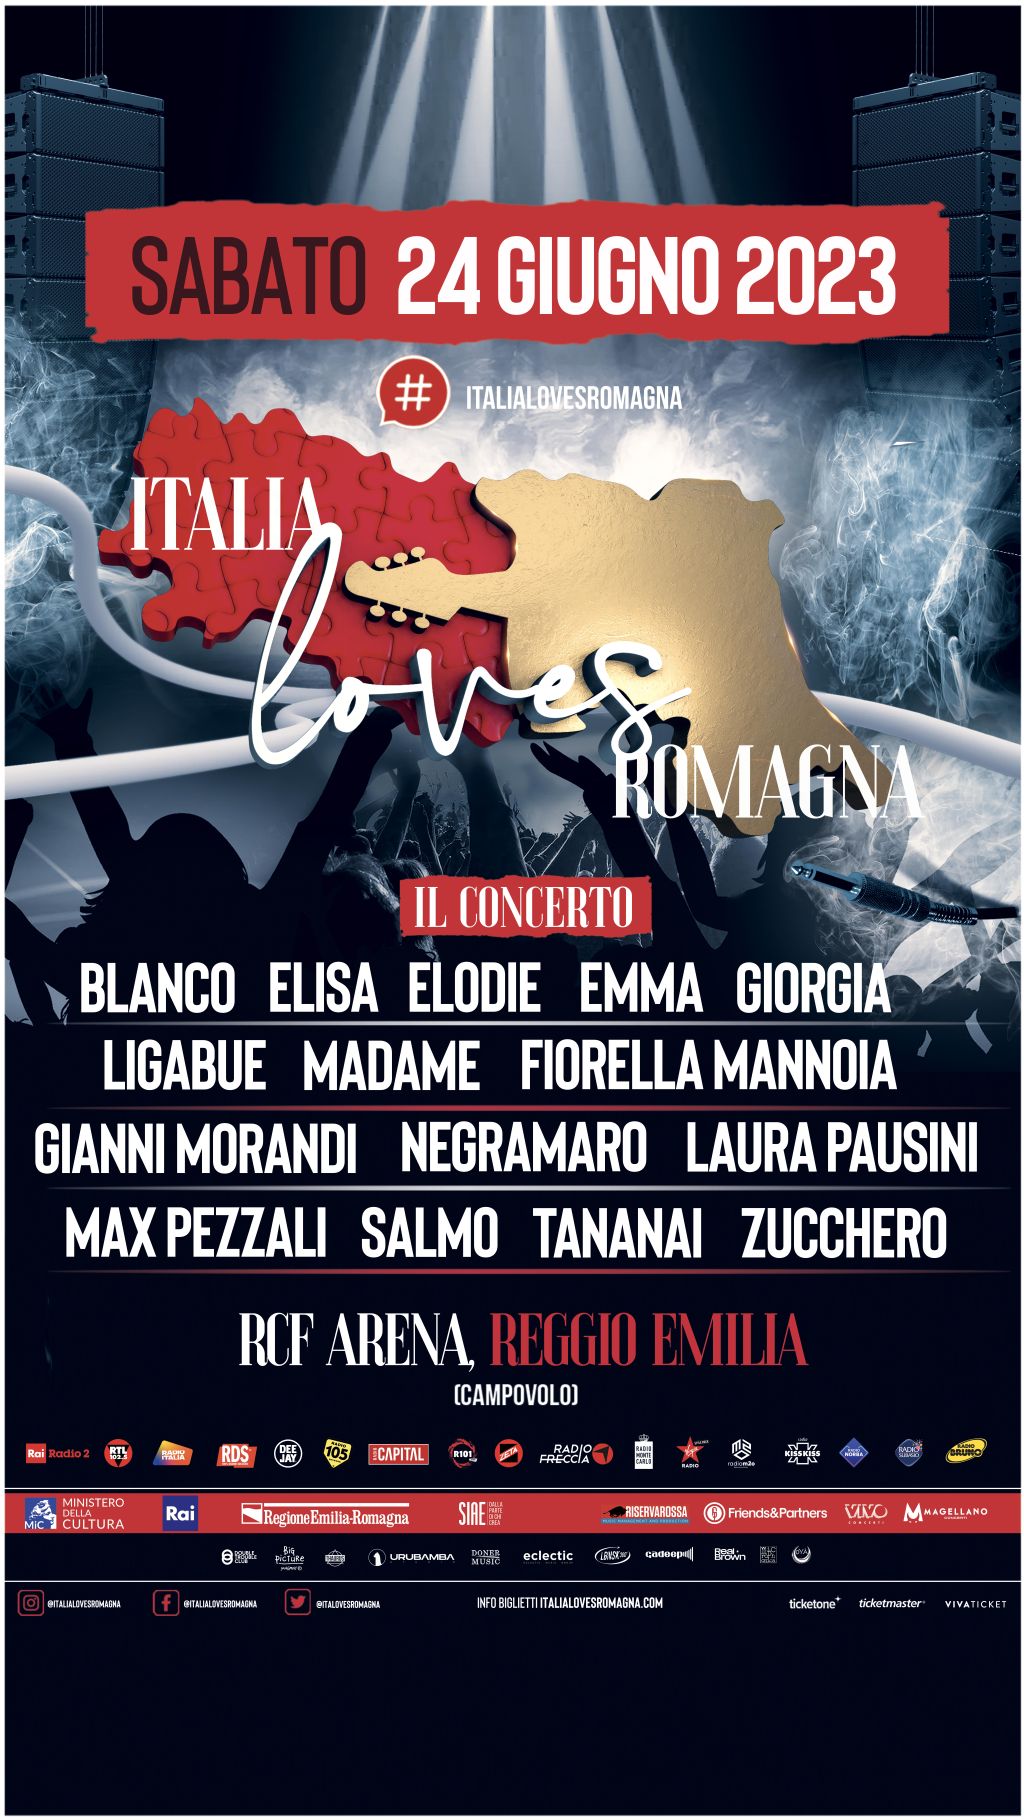 Italy loves Romagna, 15 grandi protagonisti della musica italiana insieme in unico grande momento di solidarietà!